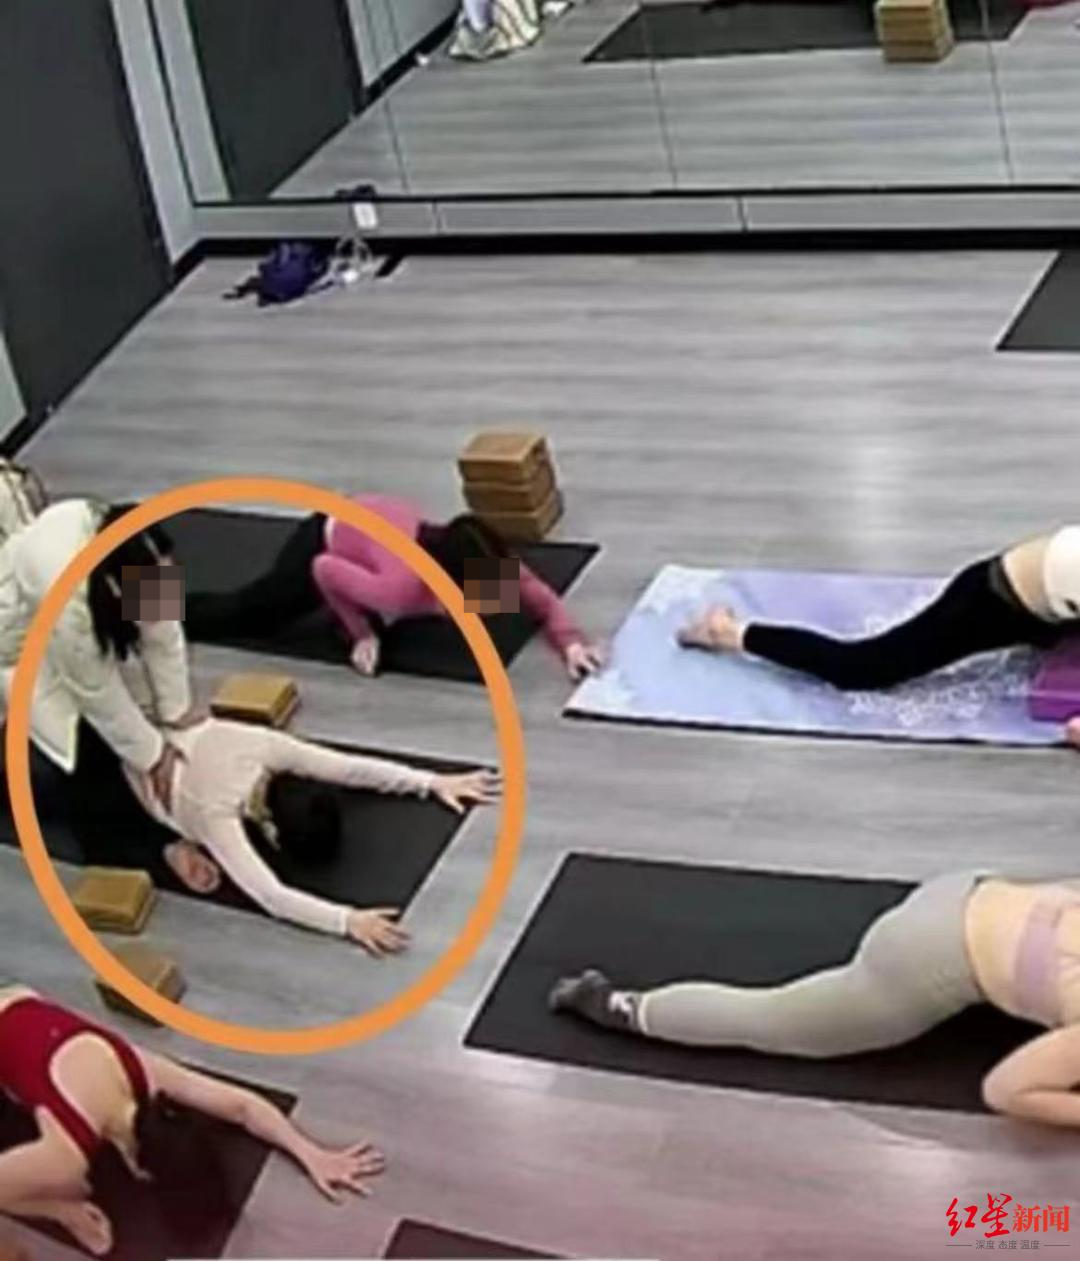 ▲女子上瑜伽课被压骨折现场 网传视频截图